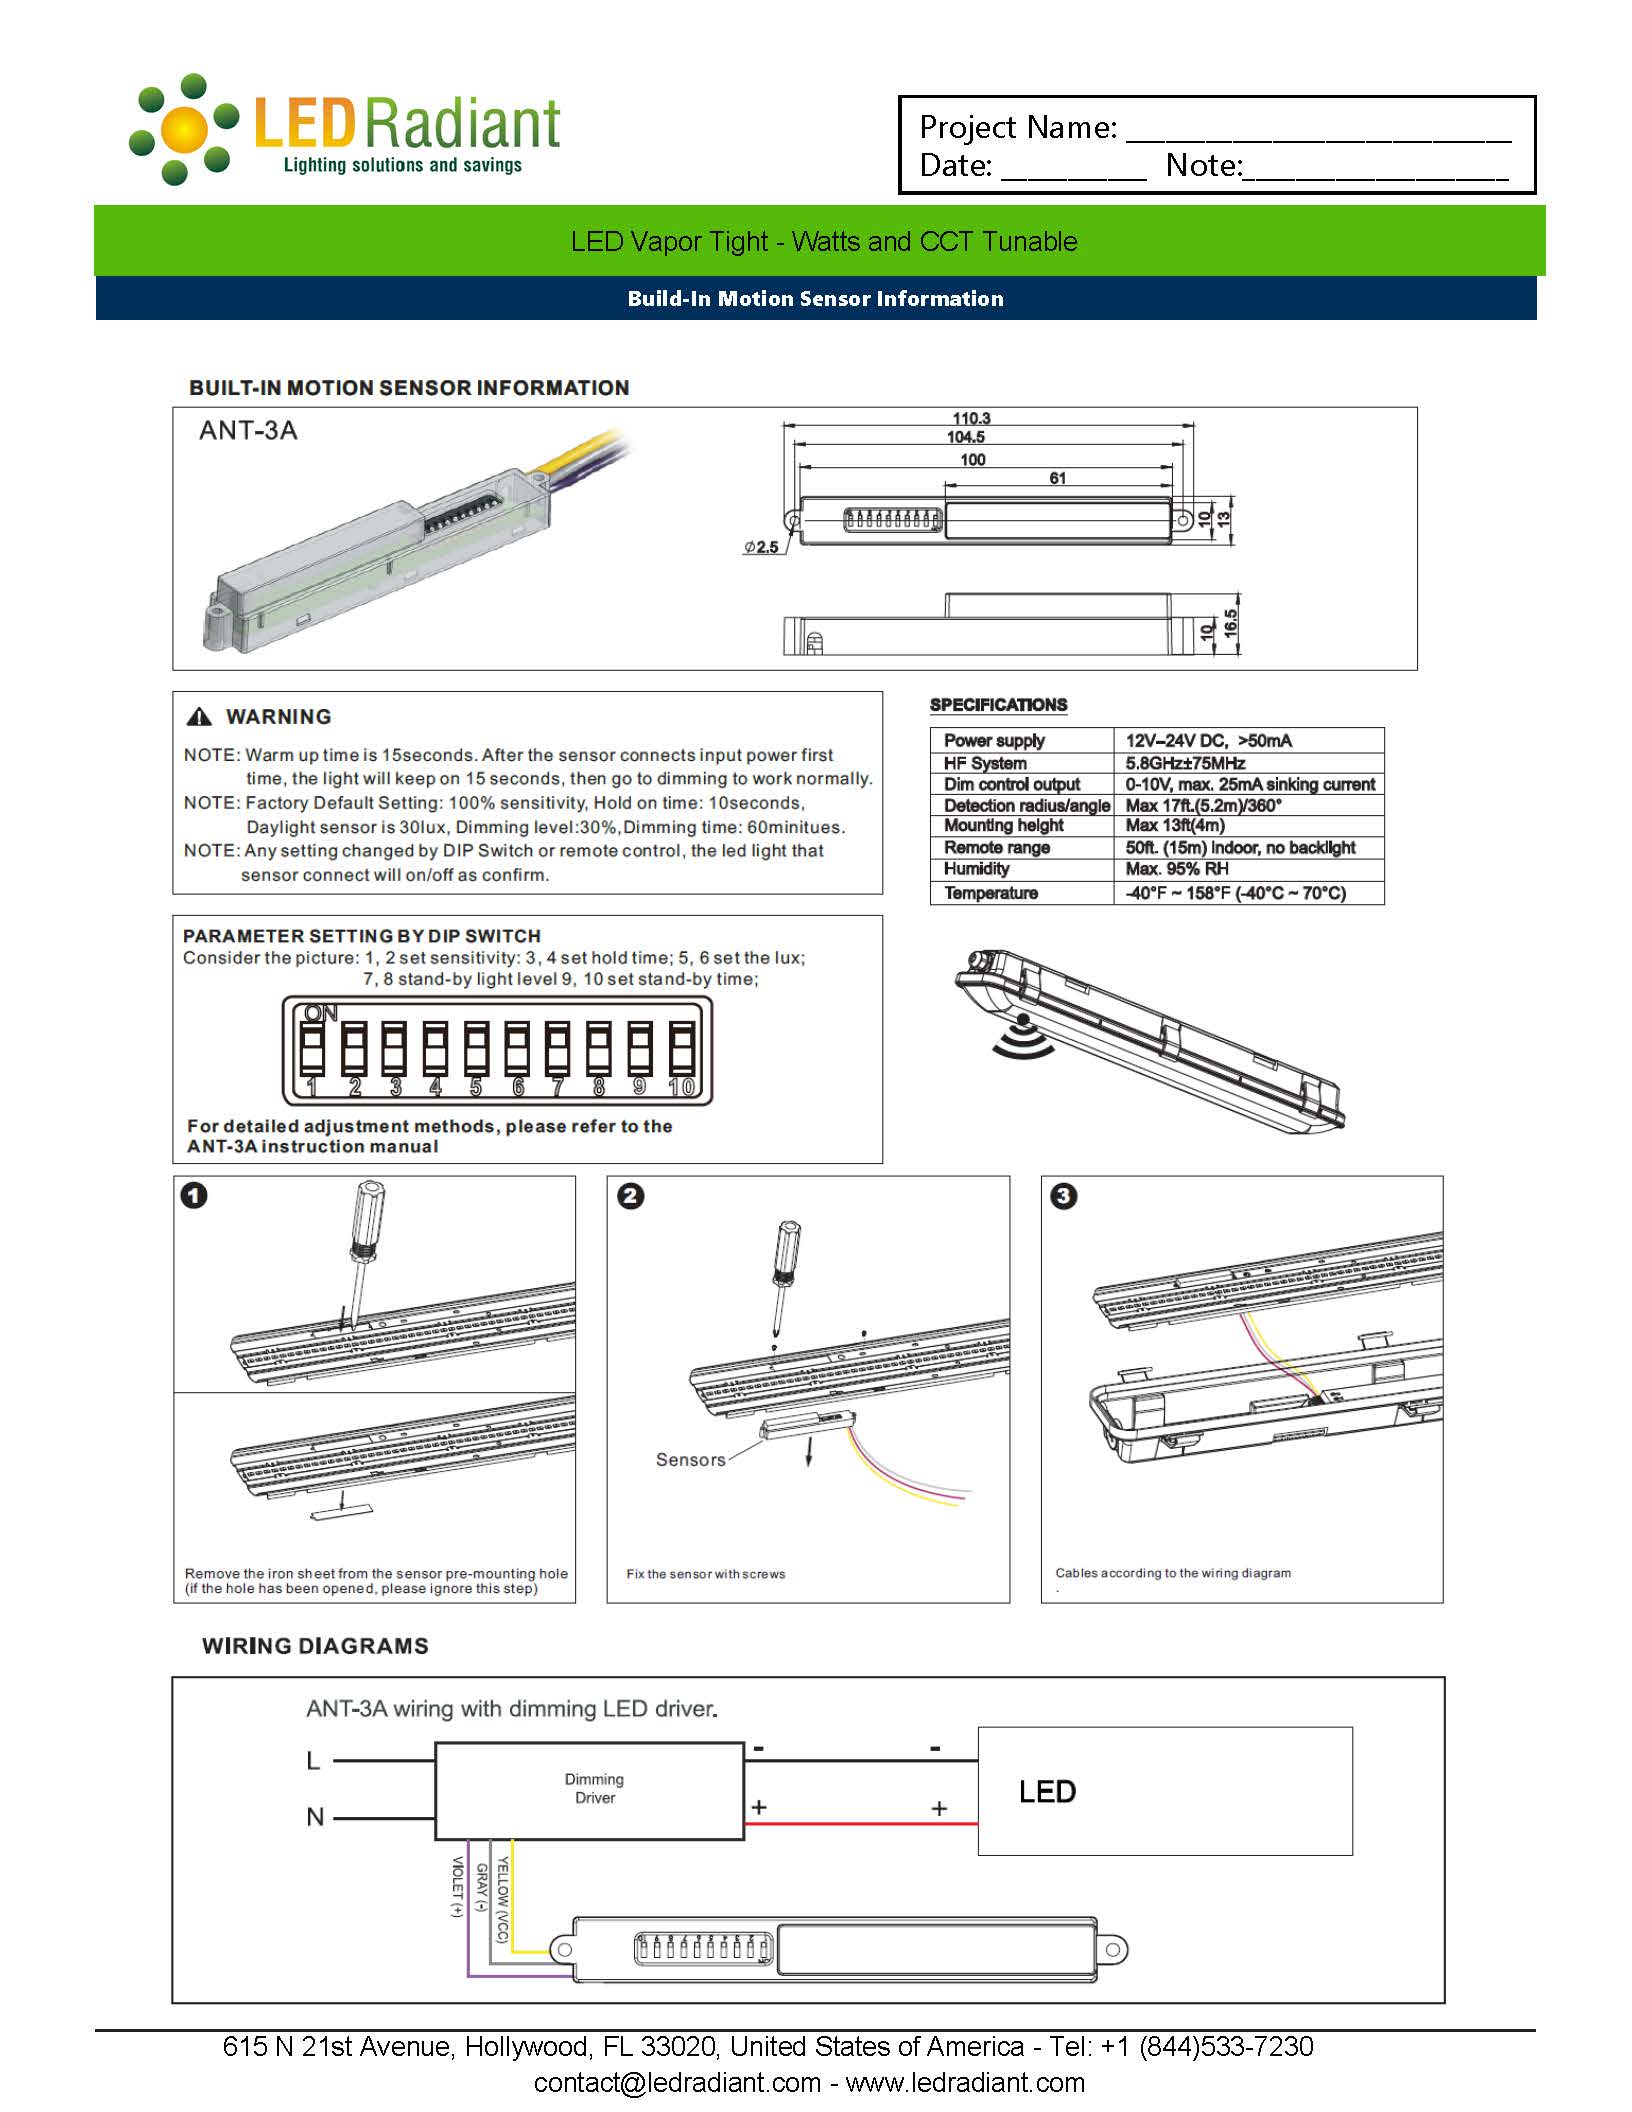 LED Vapor Tight Installation Information-4